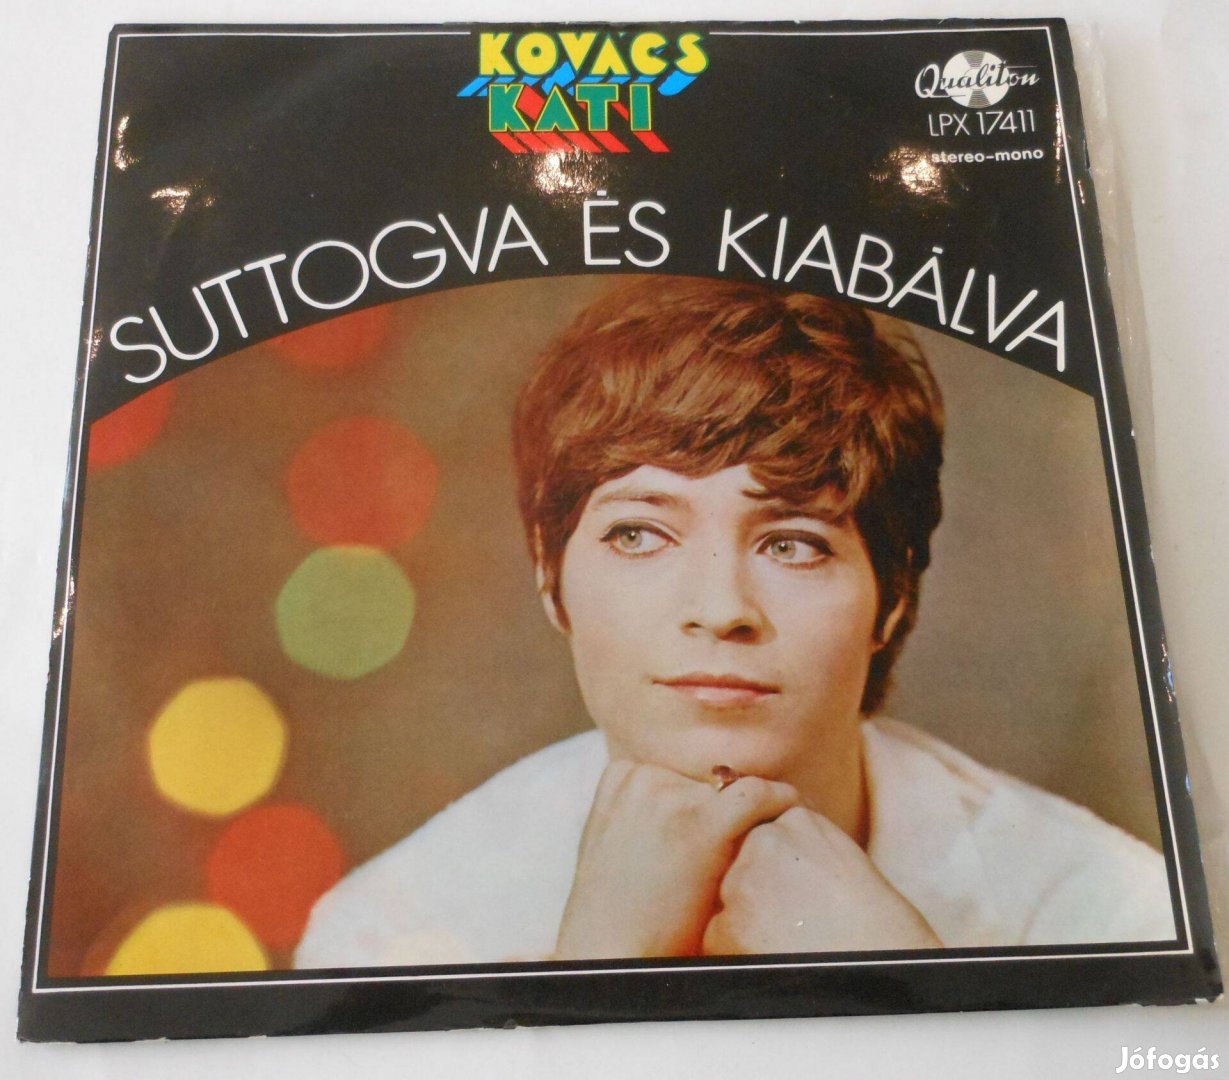 Kovács Kati: Suttogva és kiabálva LP